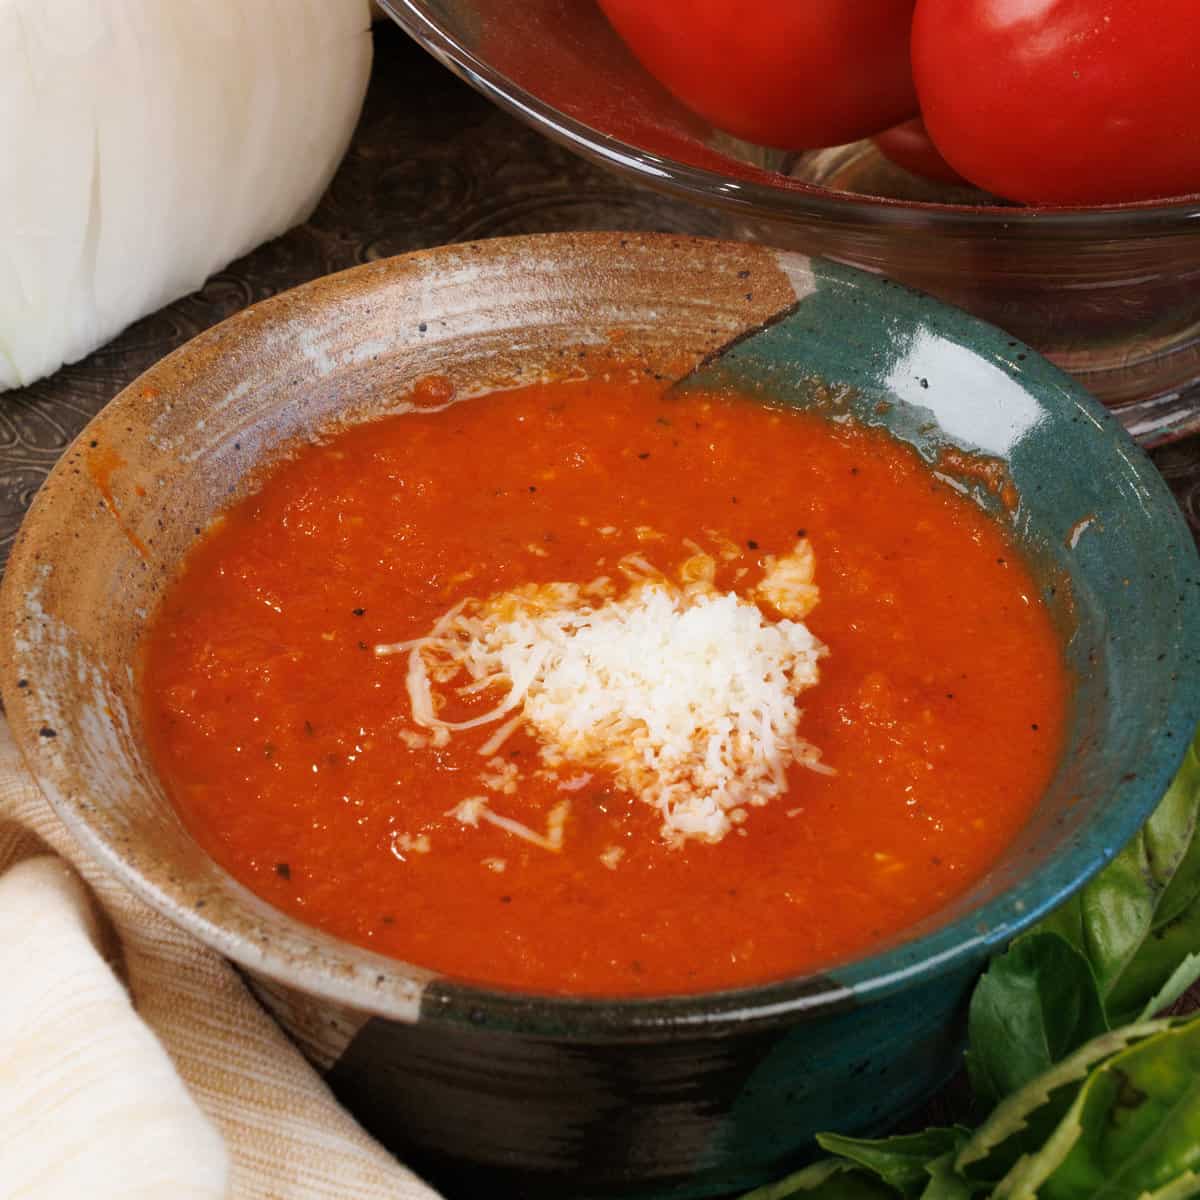 Tomato Parmesan Soup, 24 oz at Whole Foods Market